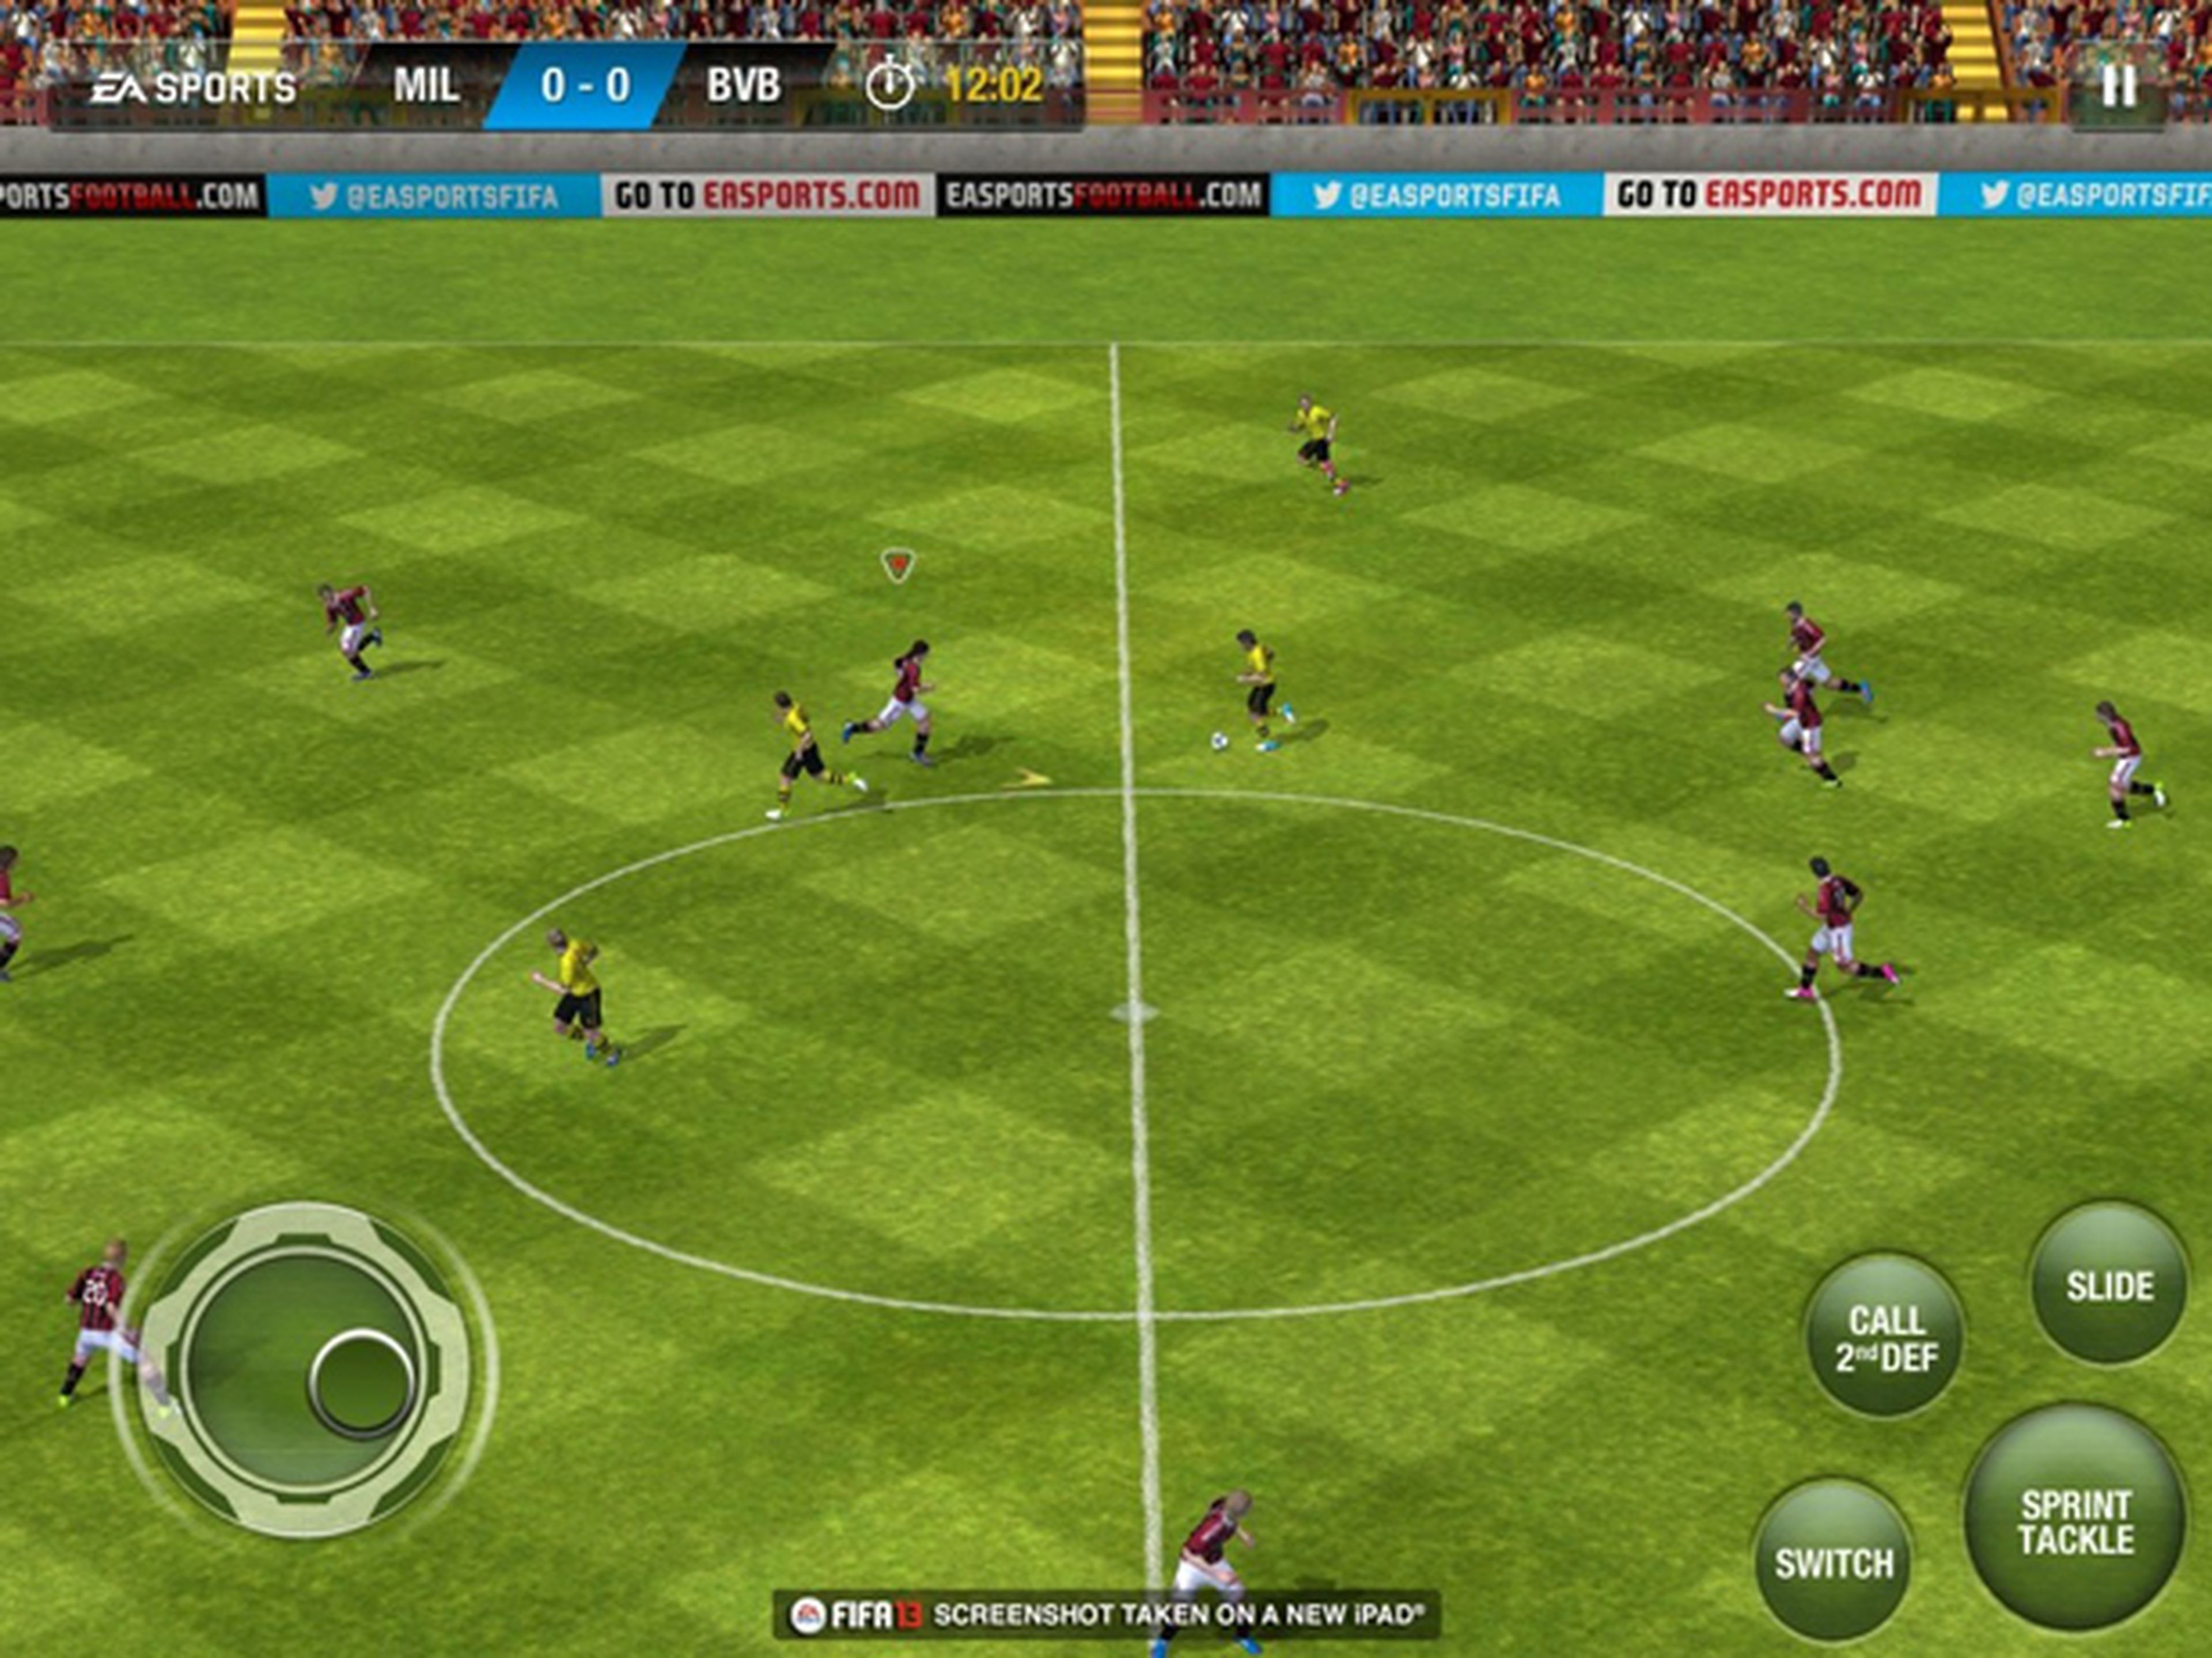 Descubre las novedades de FIFA 13 en iOS